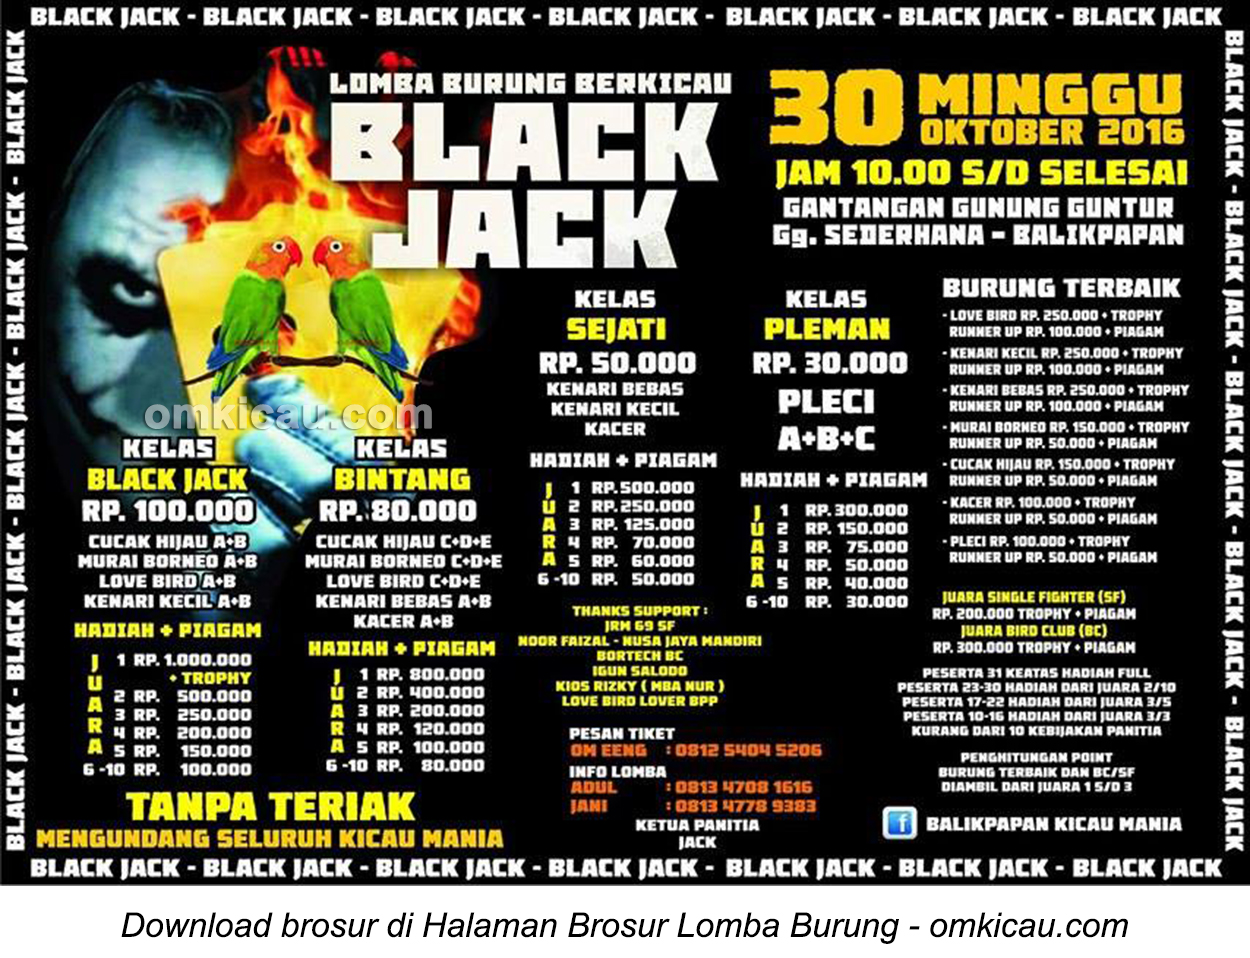 Brosur Lomba Burung Berkicau Black Jack, Balikpapan, 30 Oktober 2016